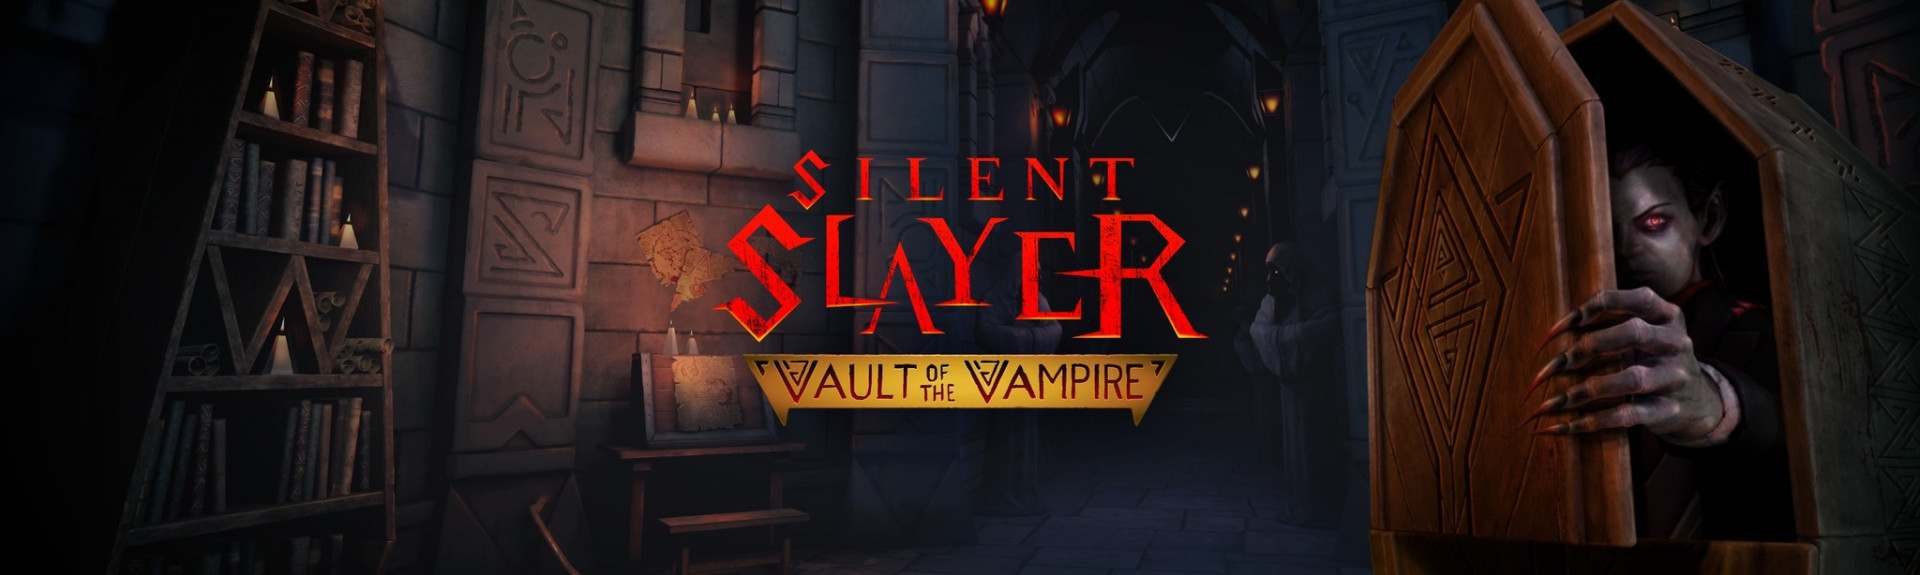 Silent Slayer: Vault of the Vampire el 6 de junio en Meta Quest